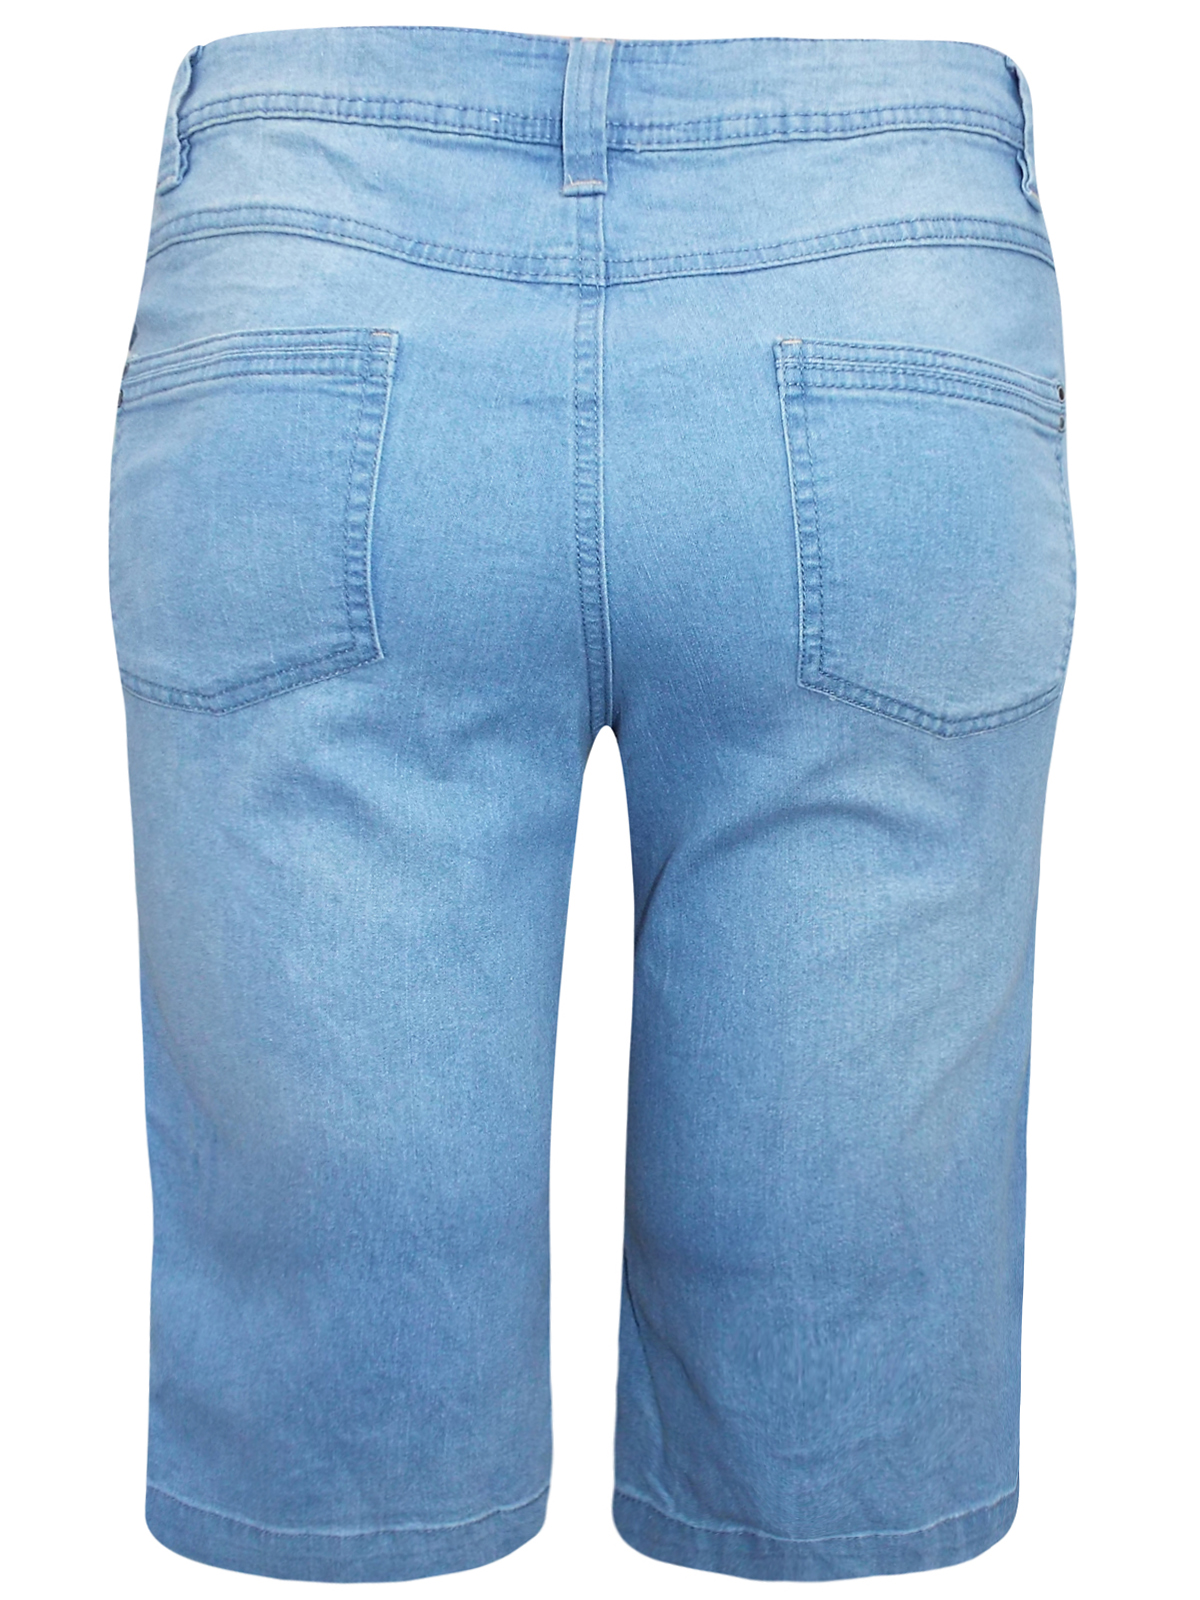 LIGHT-DENIM Cotton Rich Long Denim Shorts - Plus Size 14 to 30